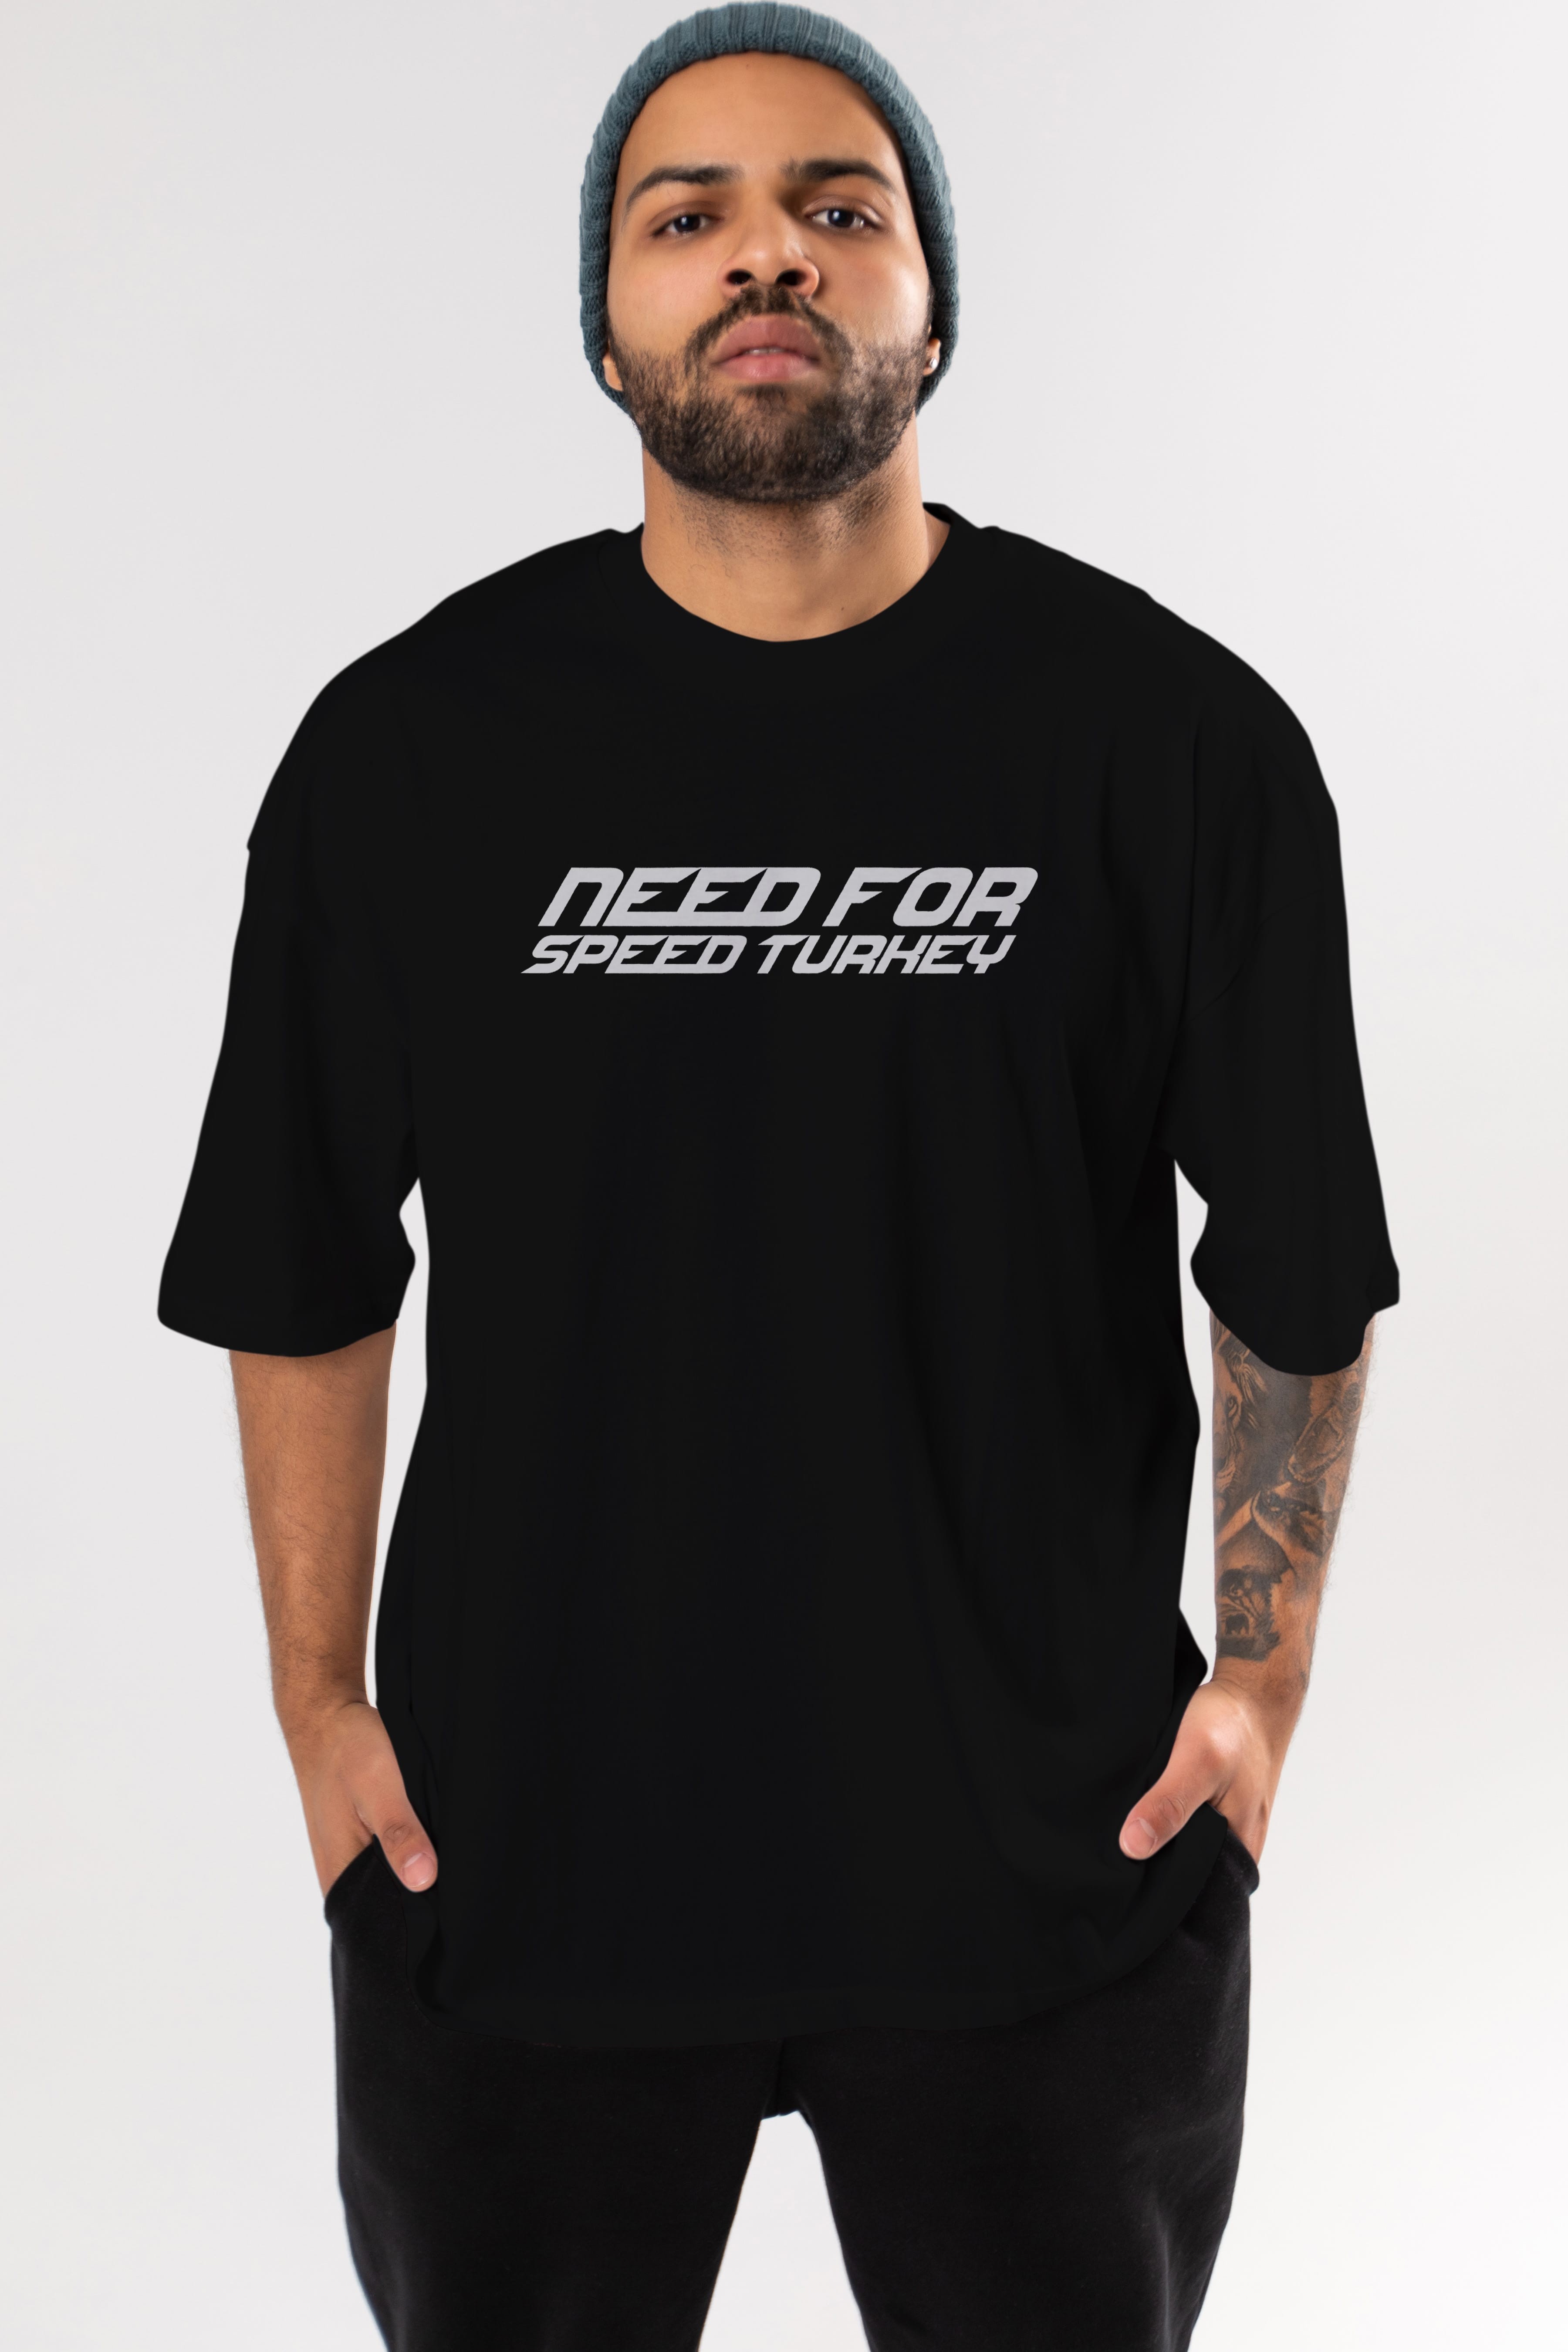 Need for Speed Turkey Ön Baskılı Oversize t-shirt %100 pamuk Erkek Kadın Unisex